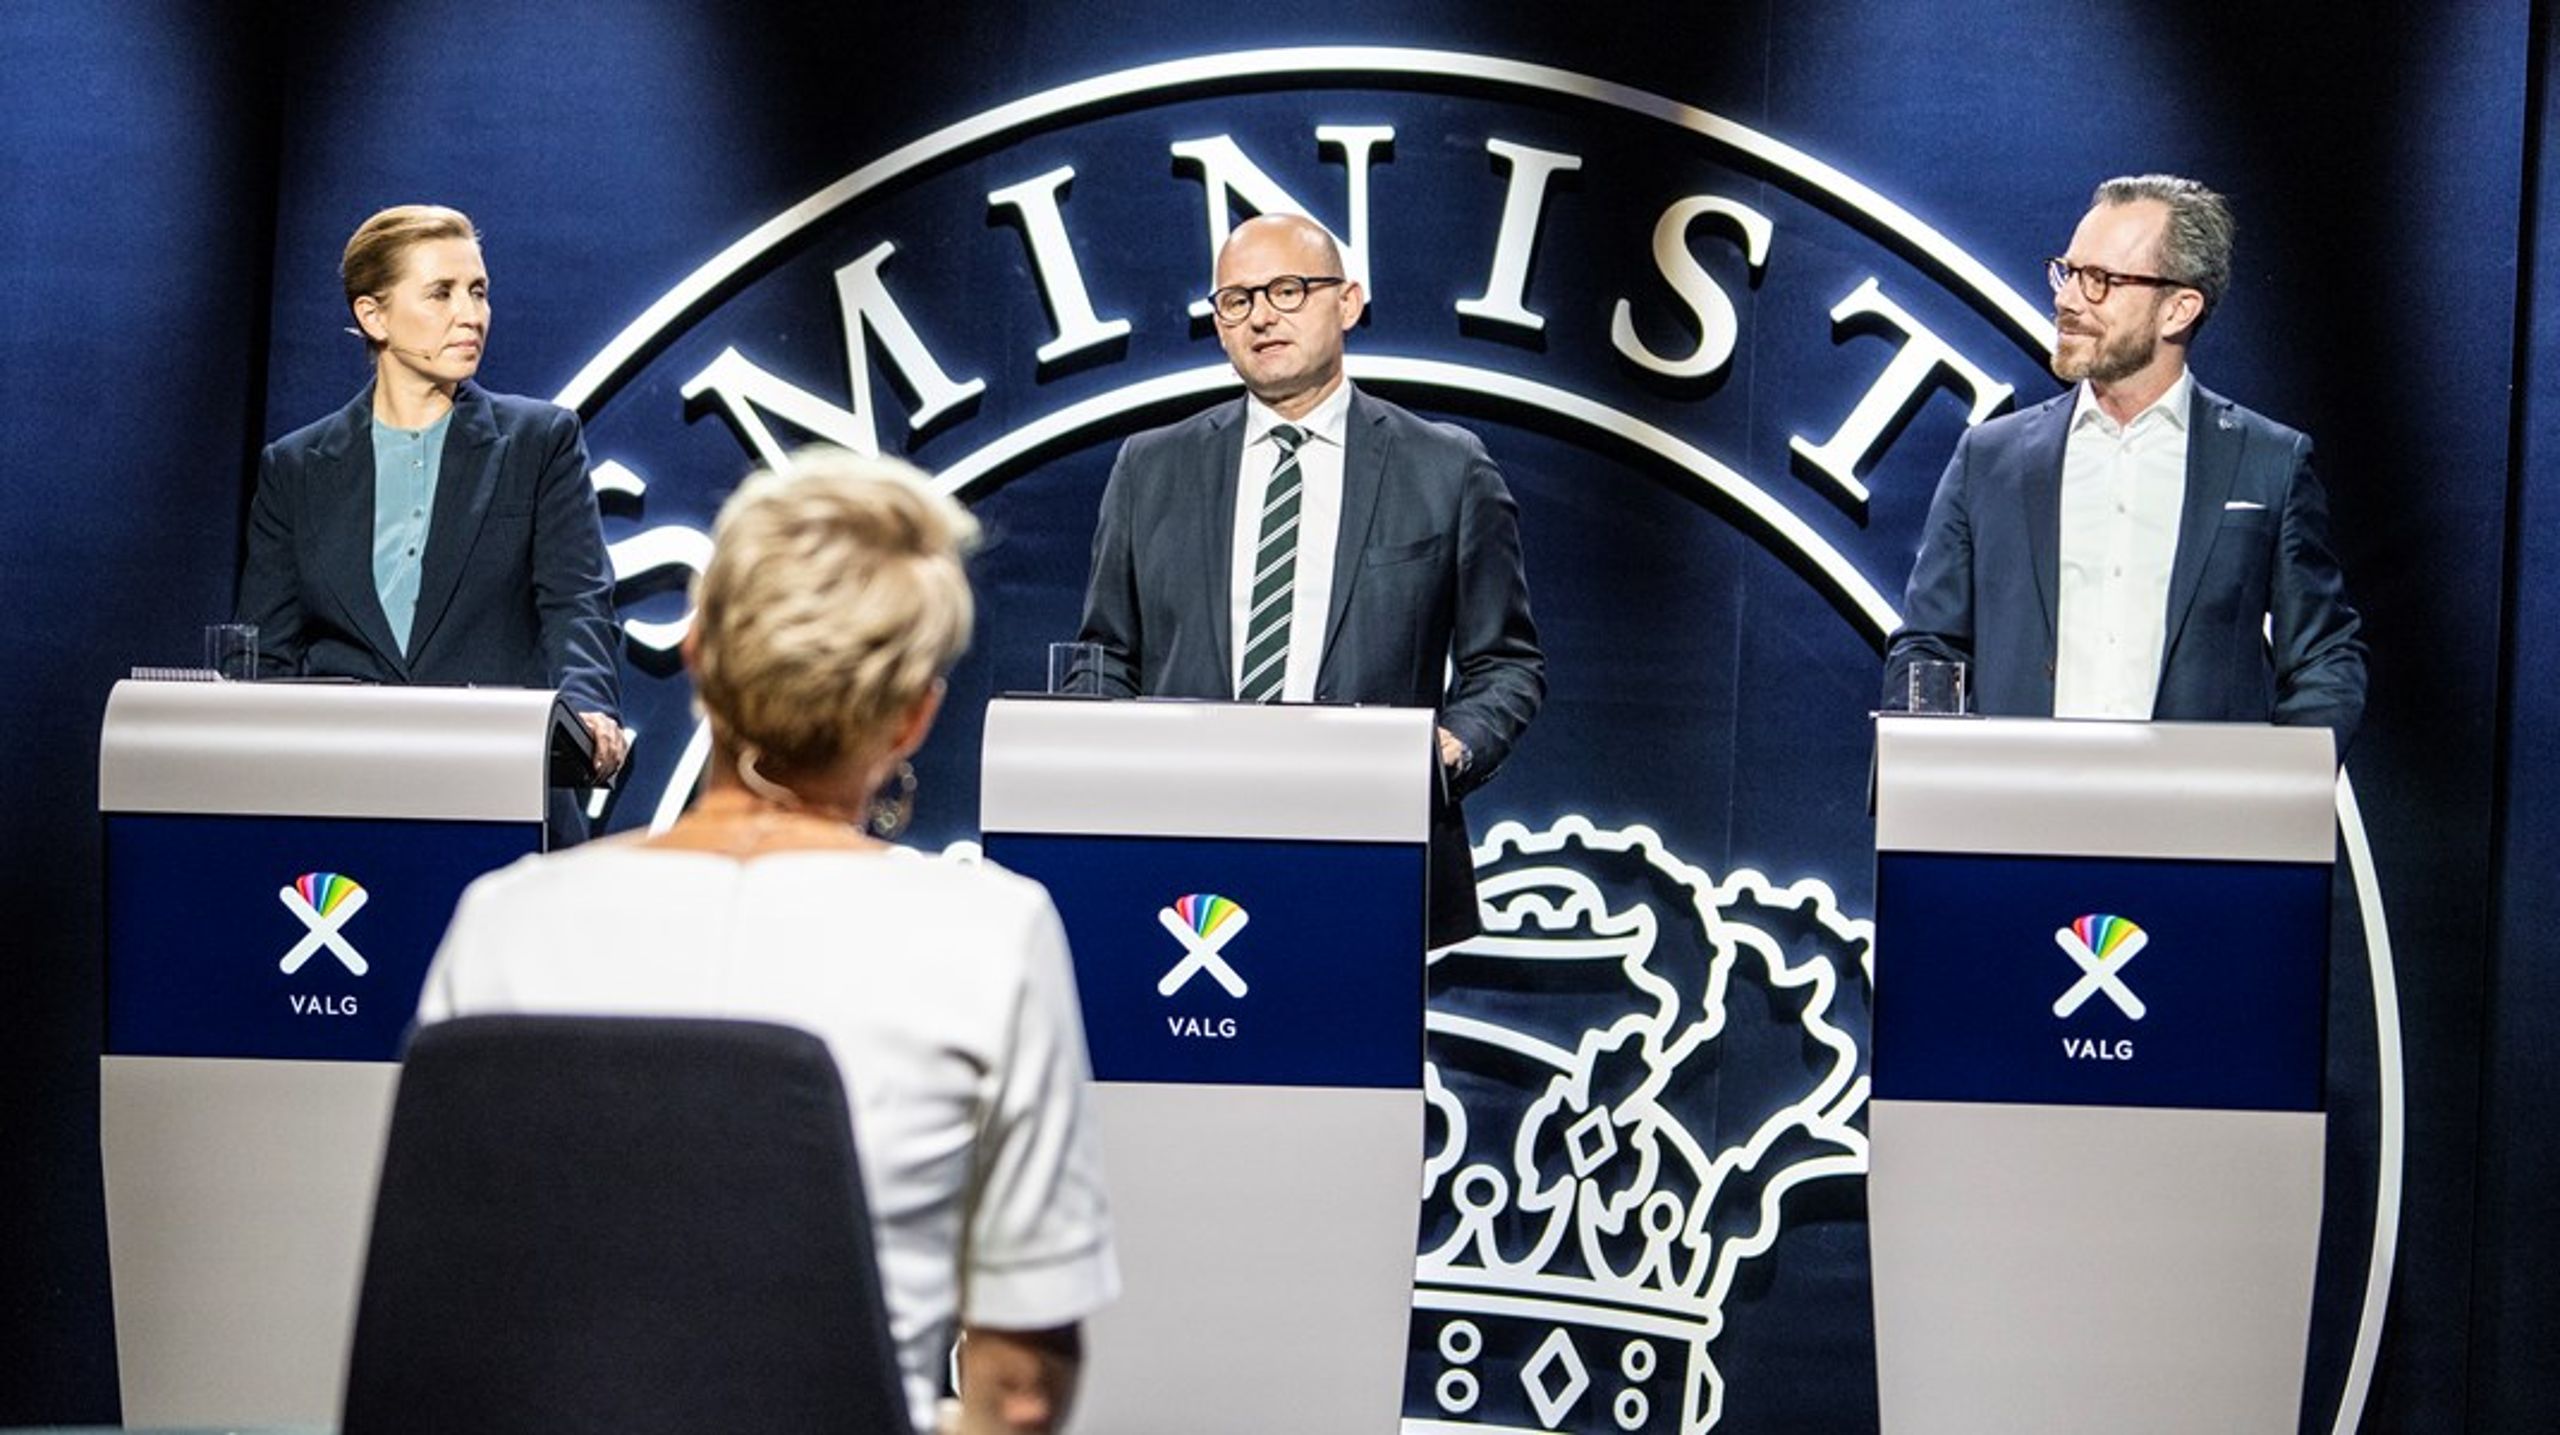 Der blev både talt om klima, velfærd og mink, da de tre statsministerkandidater i går var hovednavnene ved TV2's store "valgtræf" i Odense.